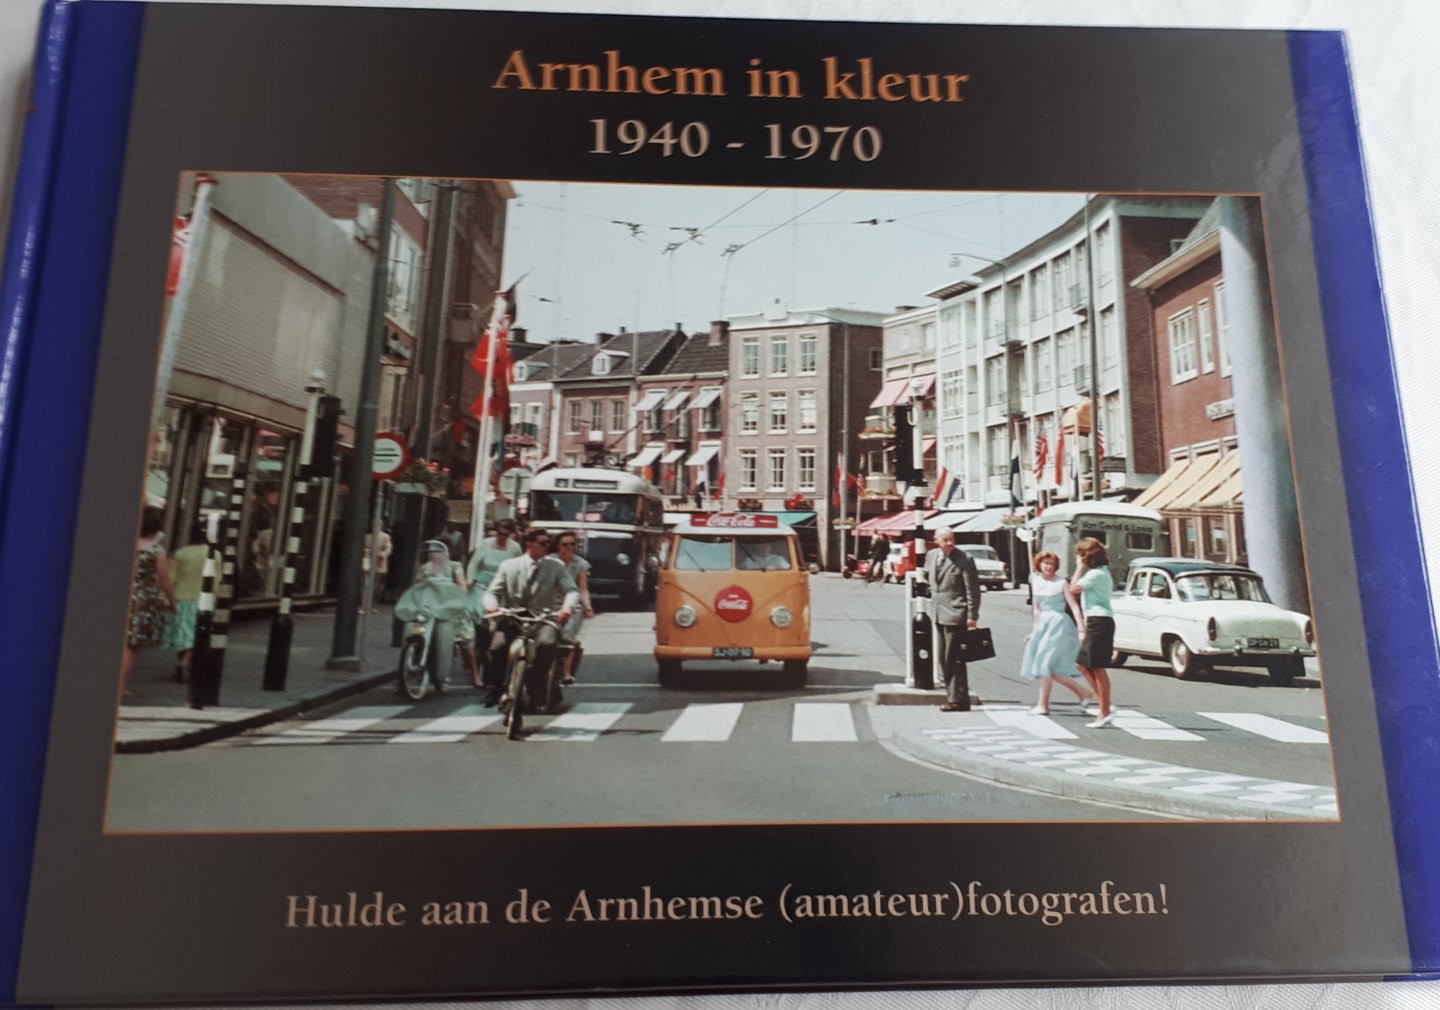 JEURISSEN, Guus en LEEUWEN, Peter - Arnhem in kleur 1940 - 1970. Hulde aan de Arnhemse (amateur) fotografen!